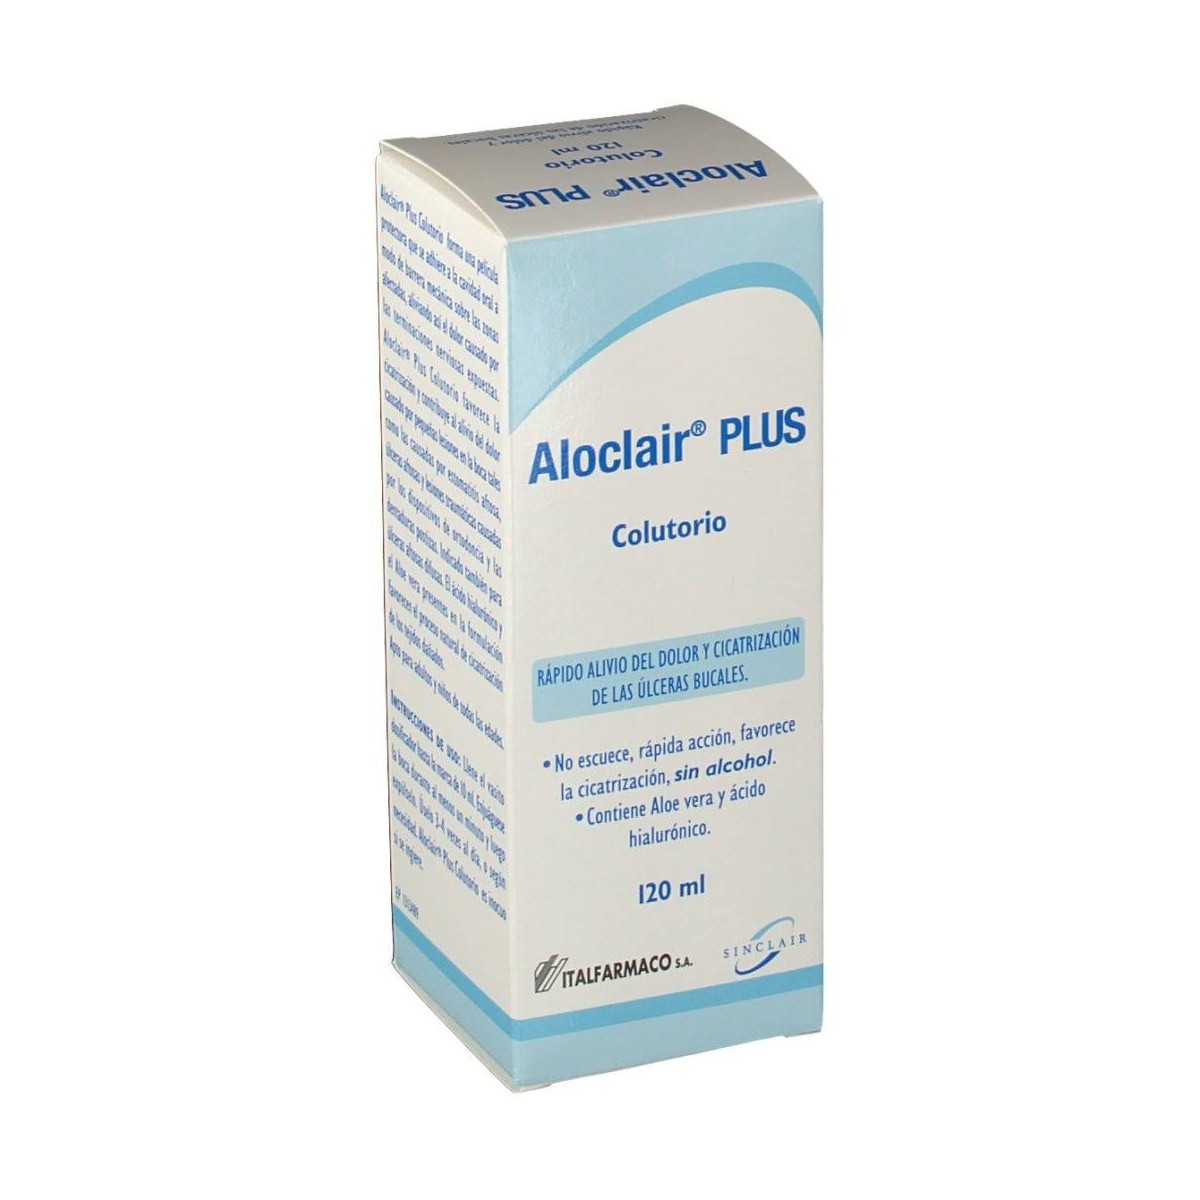 Aloclair Plus Colutorio - 120 ml